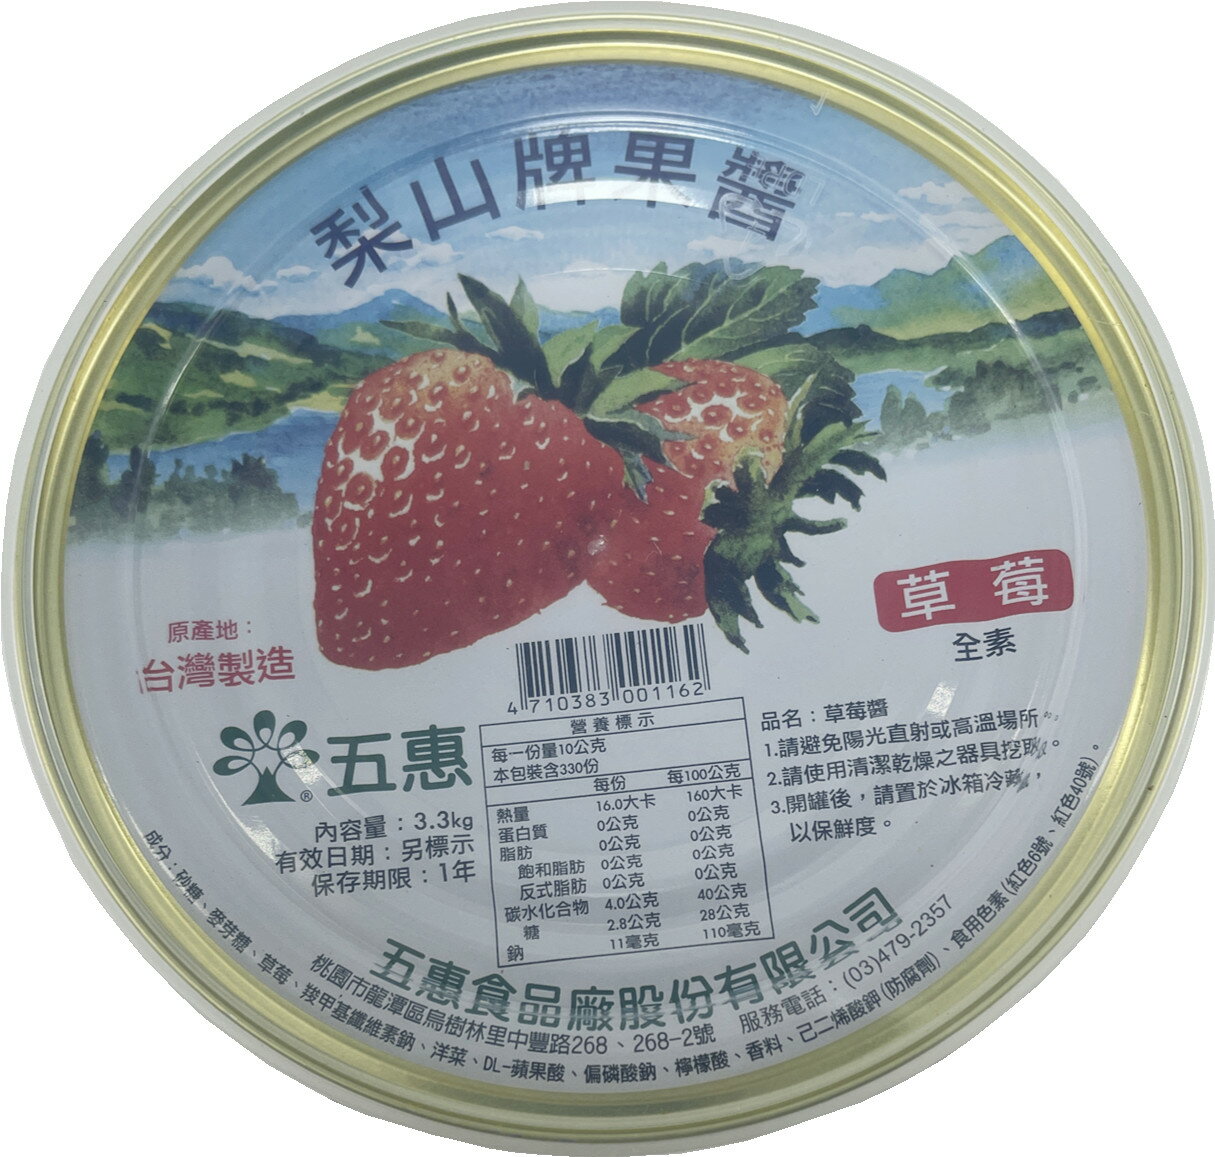 梨山牌草莓果醬(全素)3300公克 營業用 早餐抹醬 夏季冰品醬 (伊凡卡百貨)